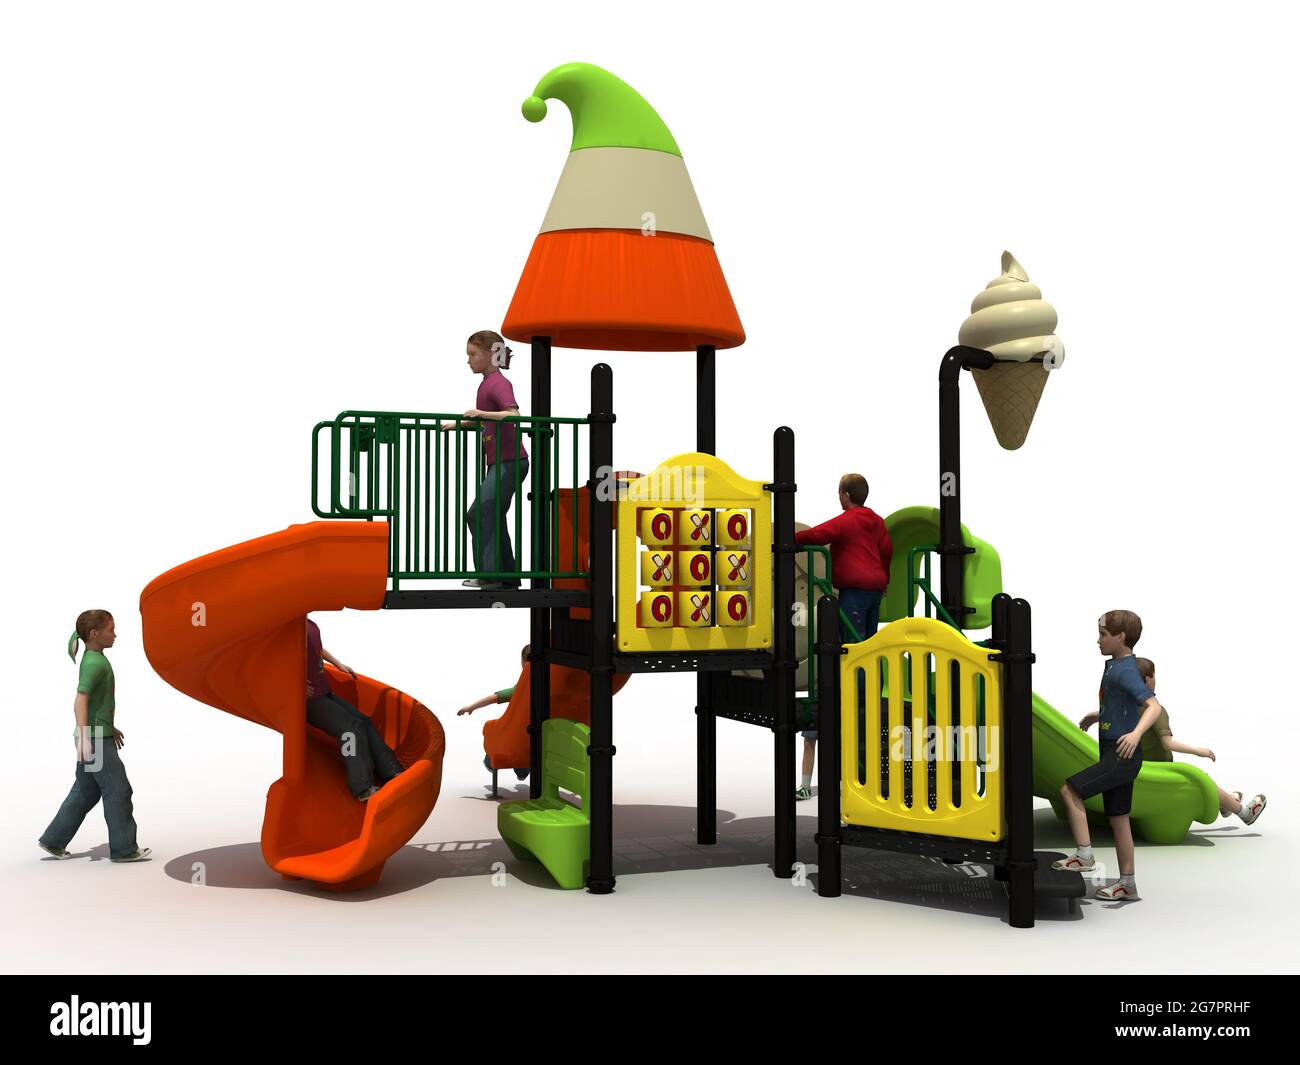 PARQUE DE JUEGOS PARA NIÑOS, PLAY PARK FOR CHILDREN – RENDER Stock Photo -  Alamy